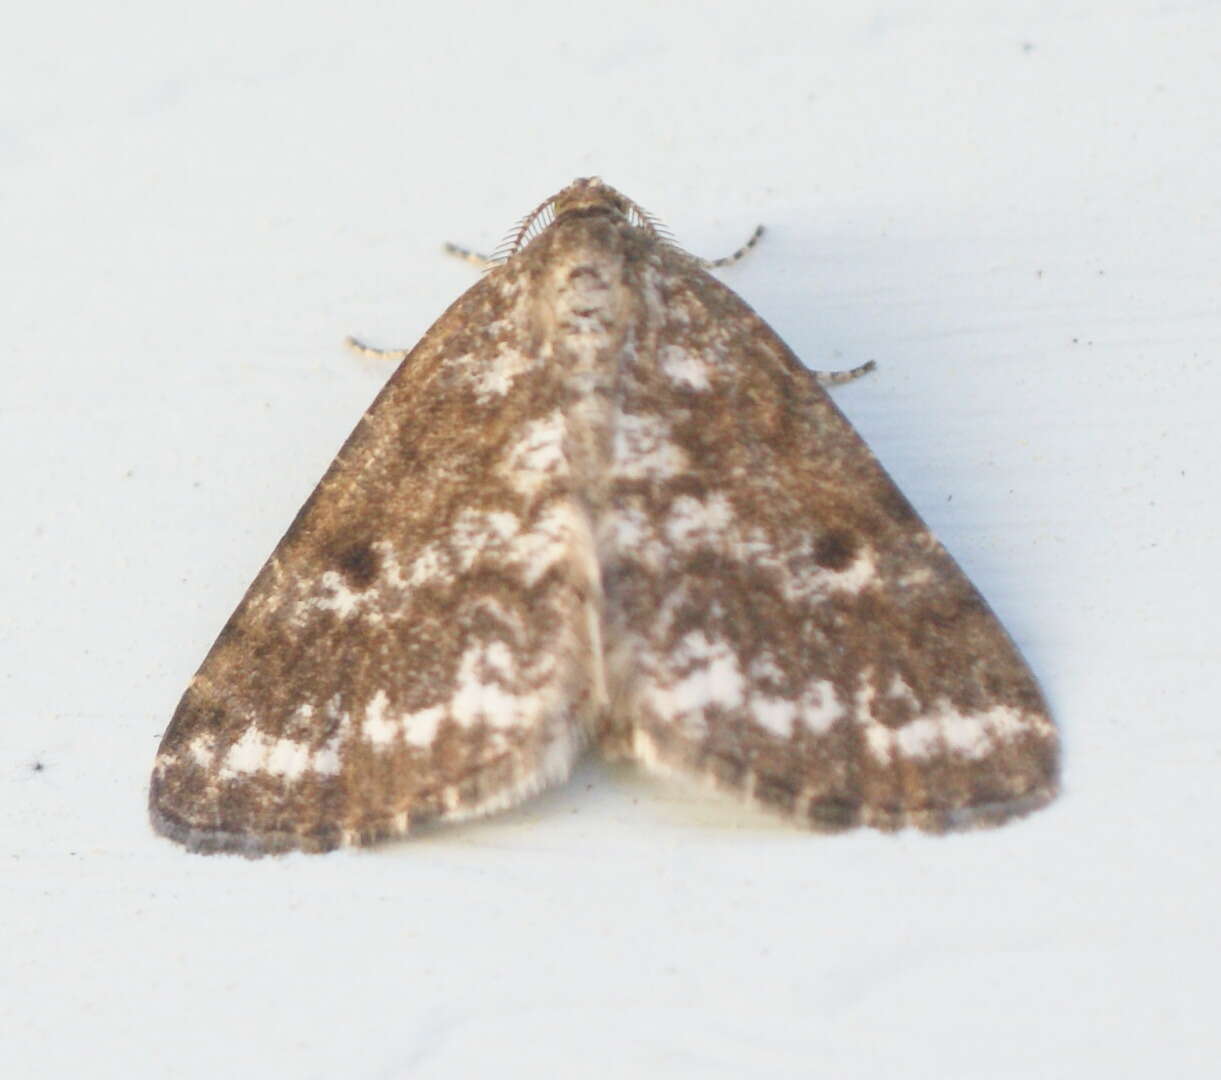 Image of Pine Powder Moth